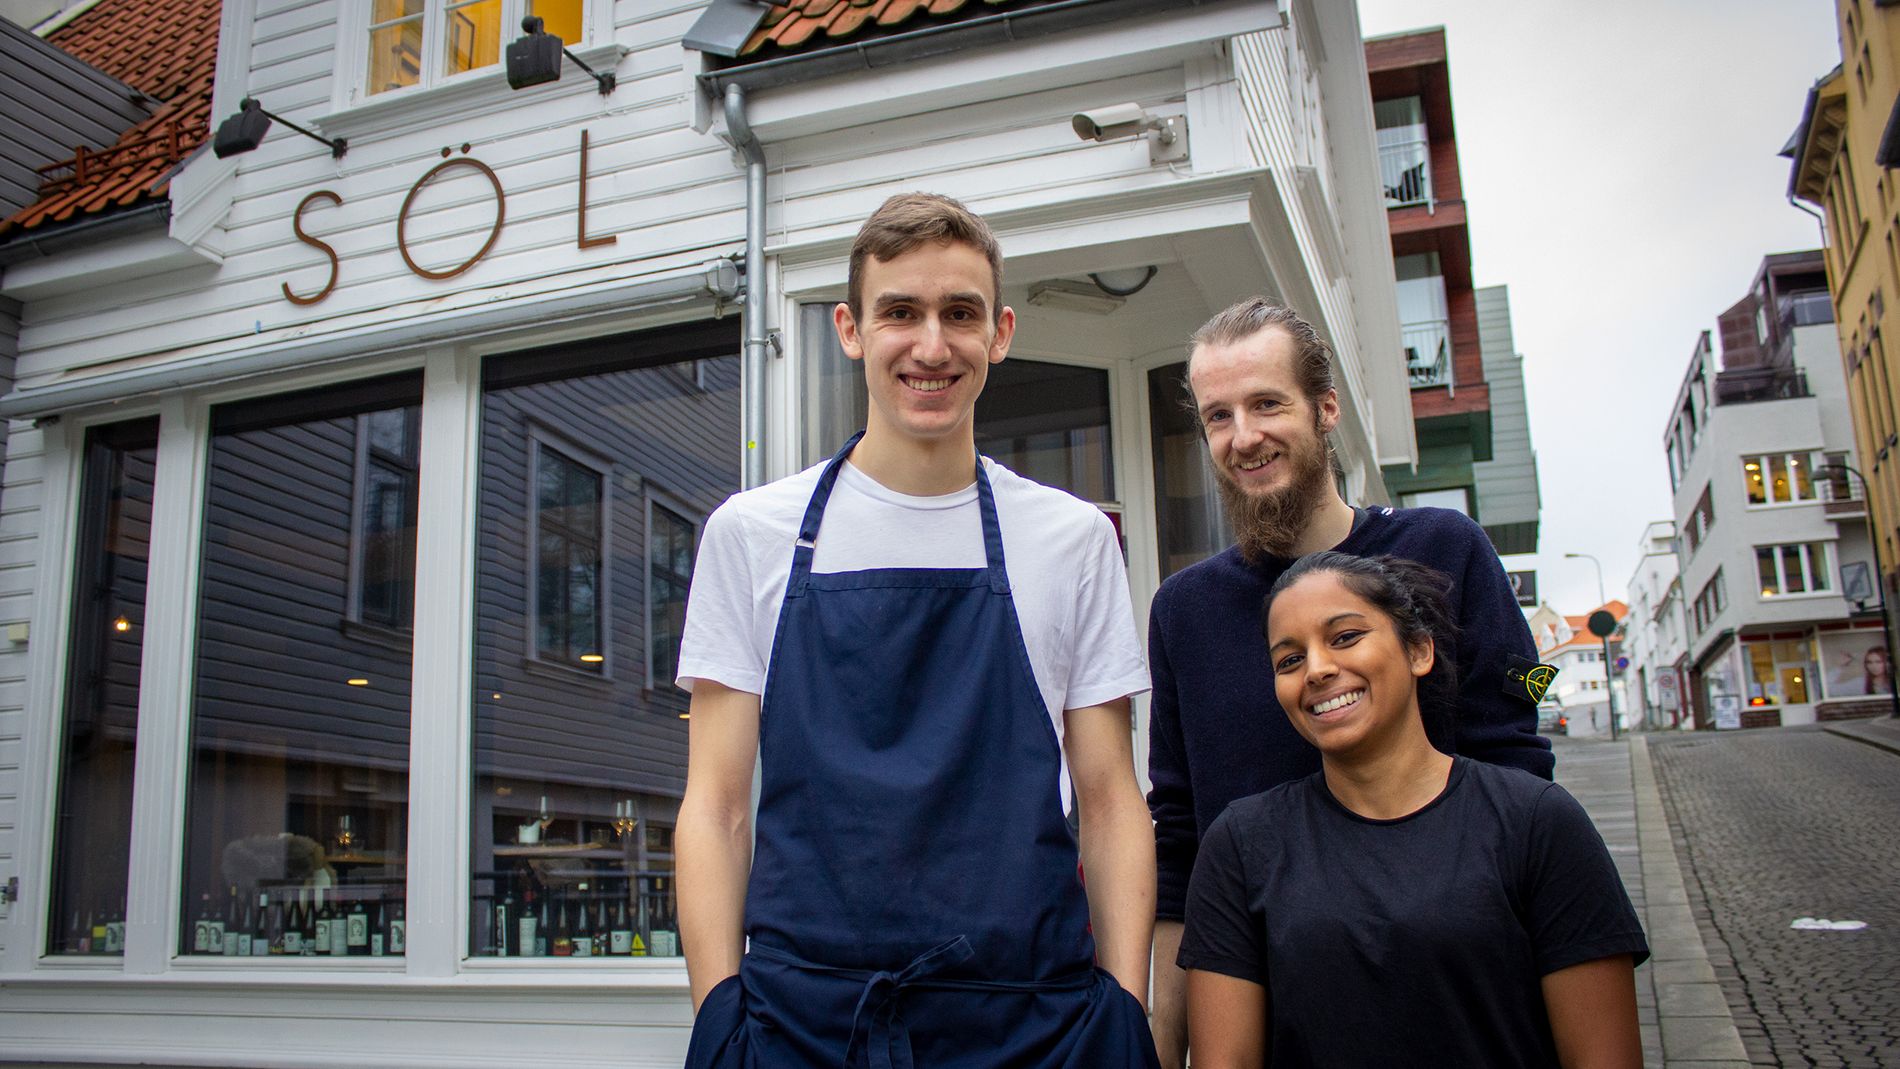 Magnus Haugland Paaske, Claes Helbak og Nayana Elisabeth Engh startet opp Söl i februar 2018. Restauranten har blitt en snakkis i byen, men også utenfor distriktet blir den lagt merke til. 